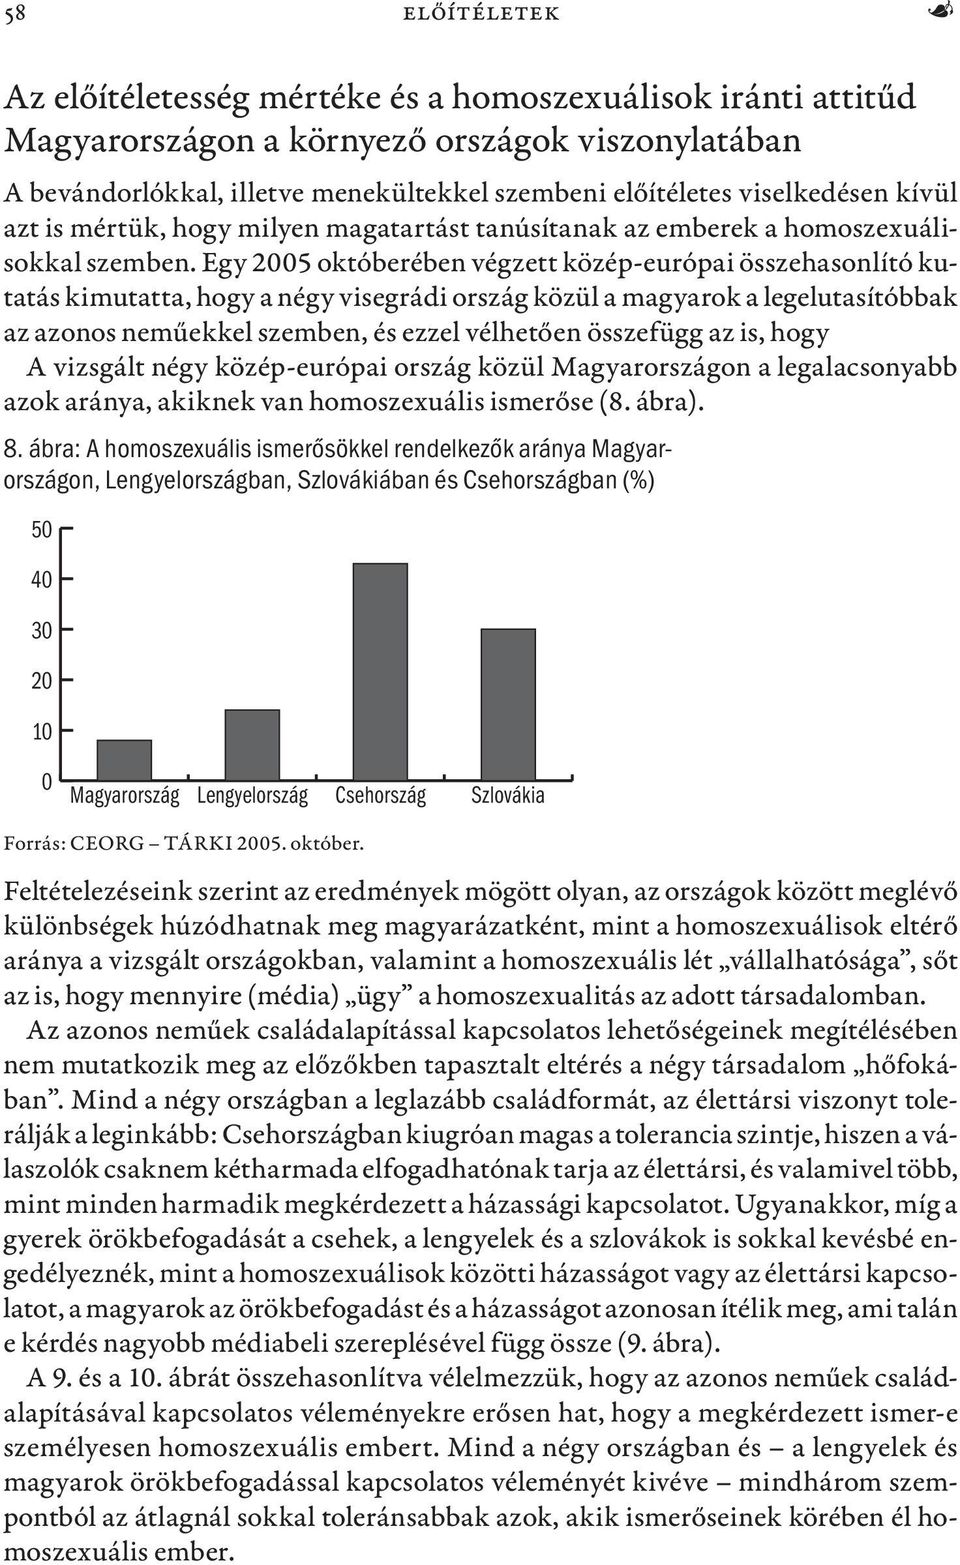 Egy 2005 októberében végzett közép-európai összehasonlító kutatás kimutatta, hogy a négy visegrádi ország közül a magyarok a legelutasítóbbak az azonos neműekkel szemben, és ezzel vélhetően összefügg